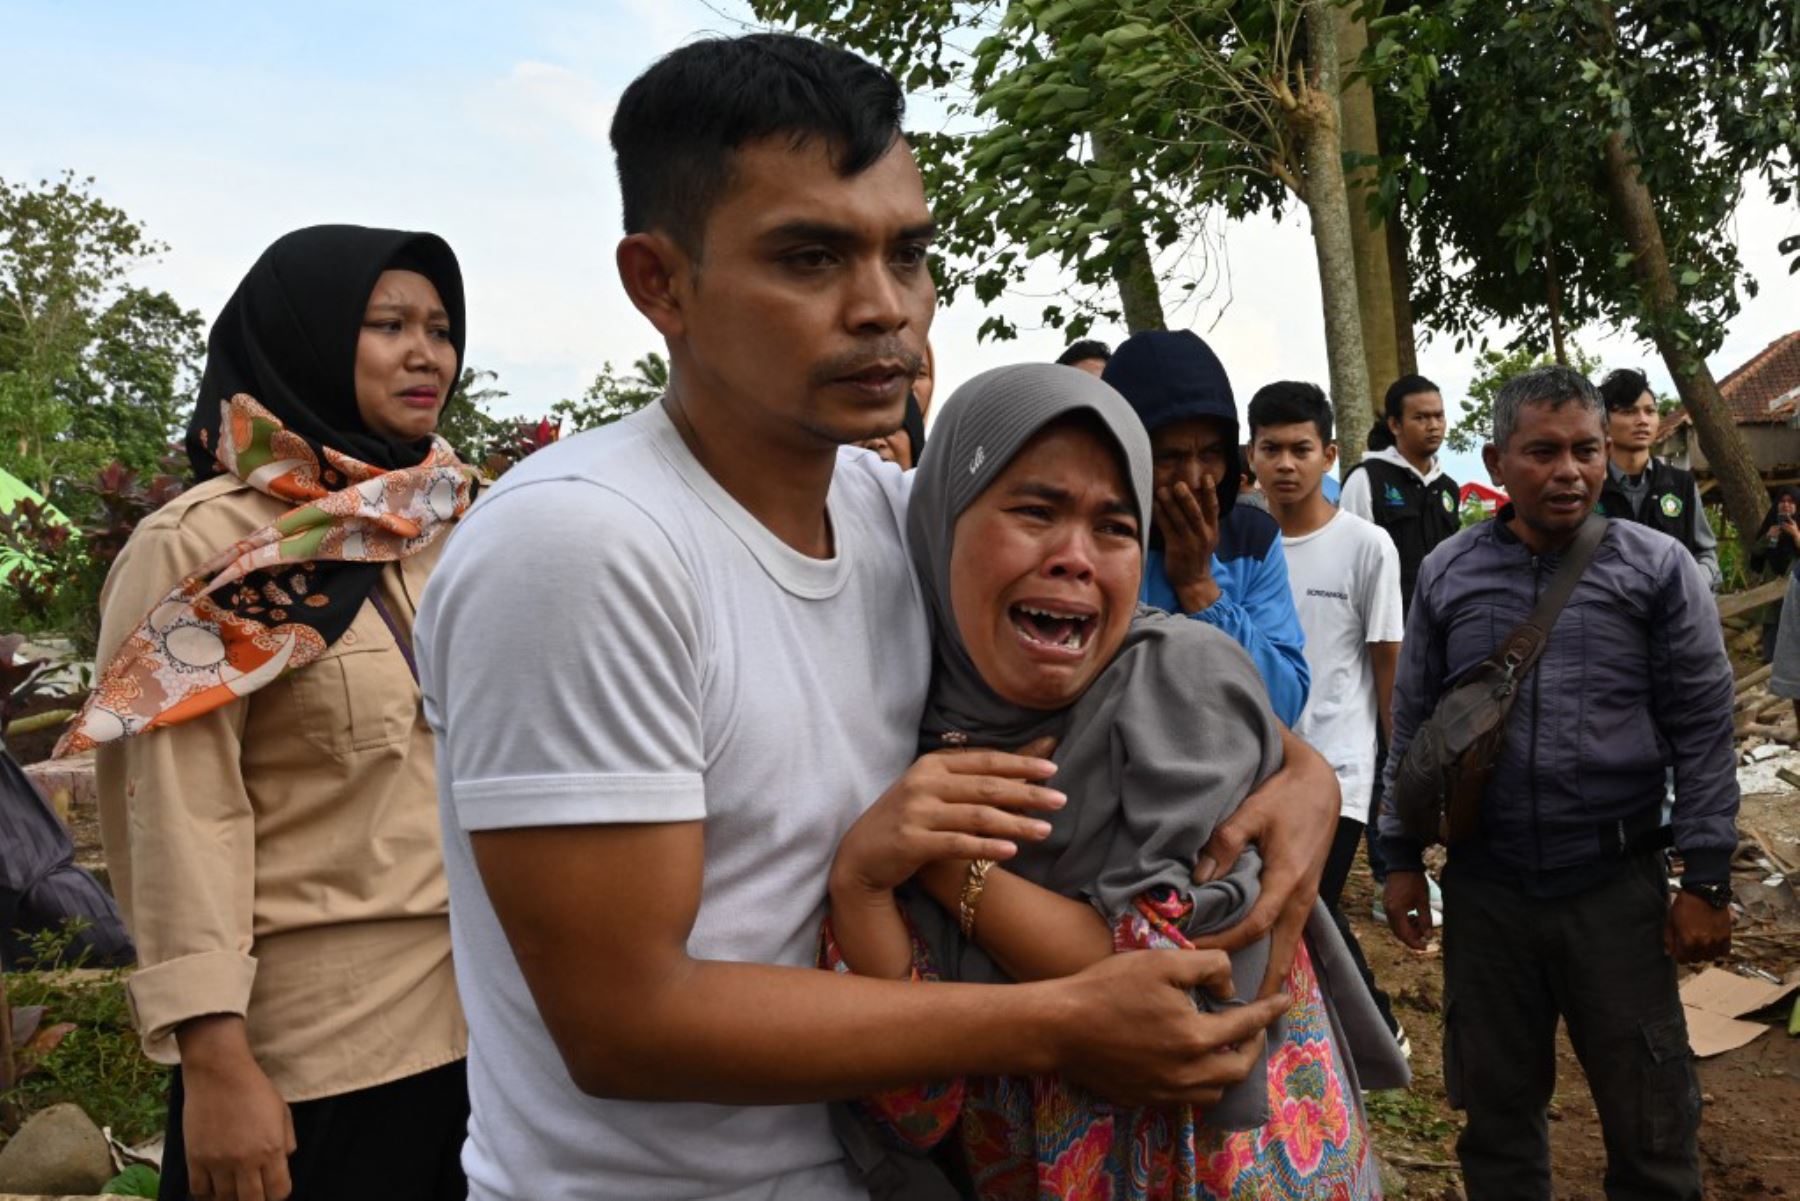 La mayoría de las víctimas del seísmo, ocurrido a 75 kilómetros de Yakarta, murieron aplastadas por el colapso de los edificios, detallaron las autoridades. Foto: AFP